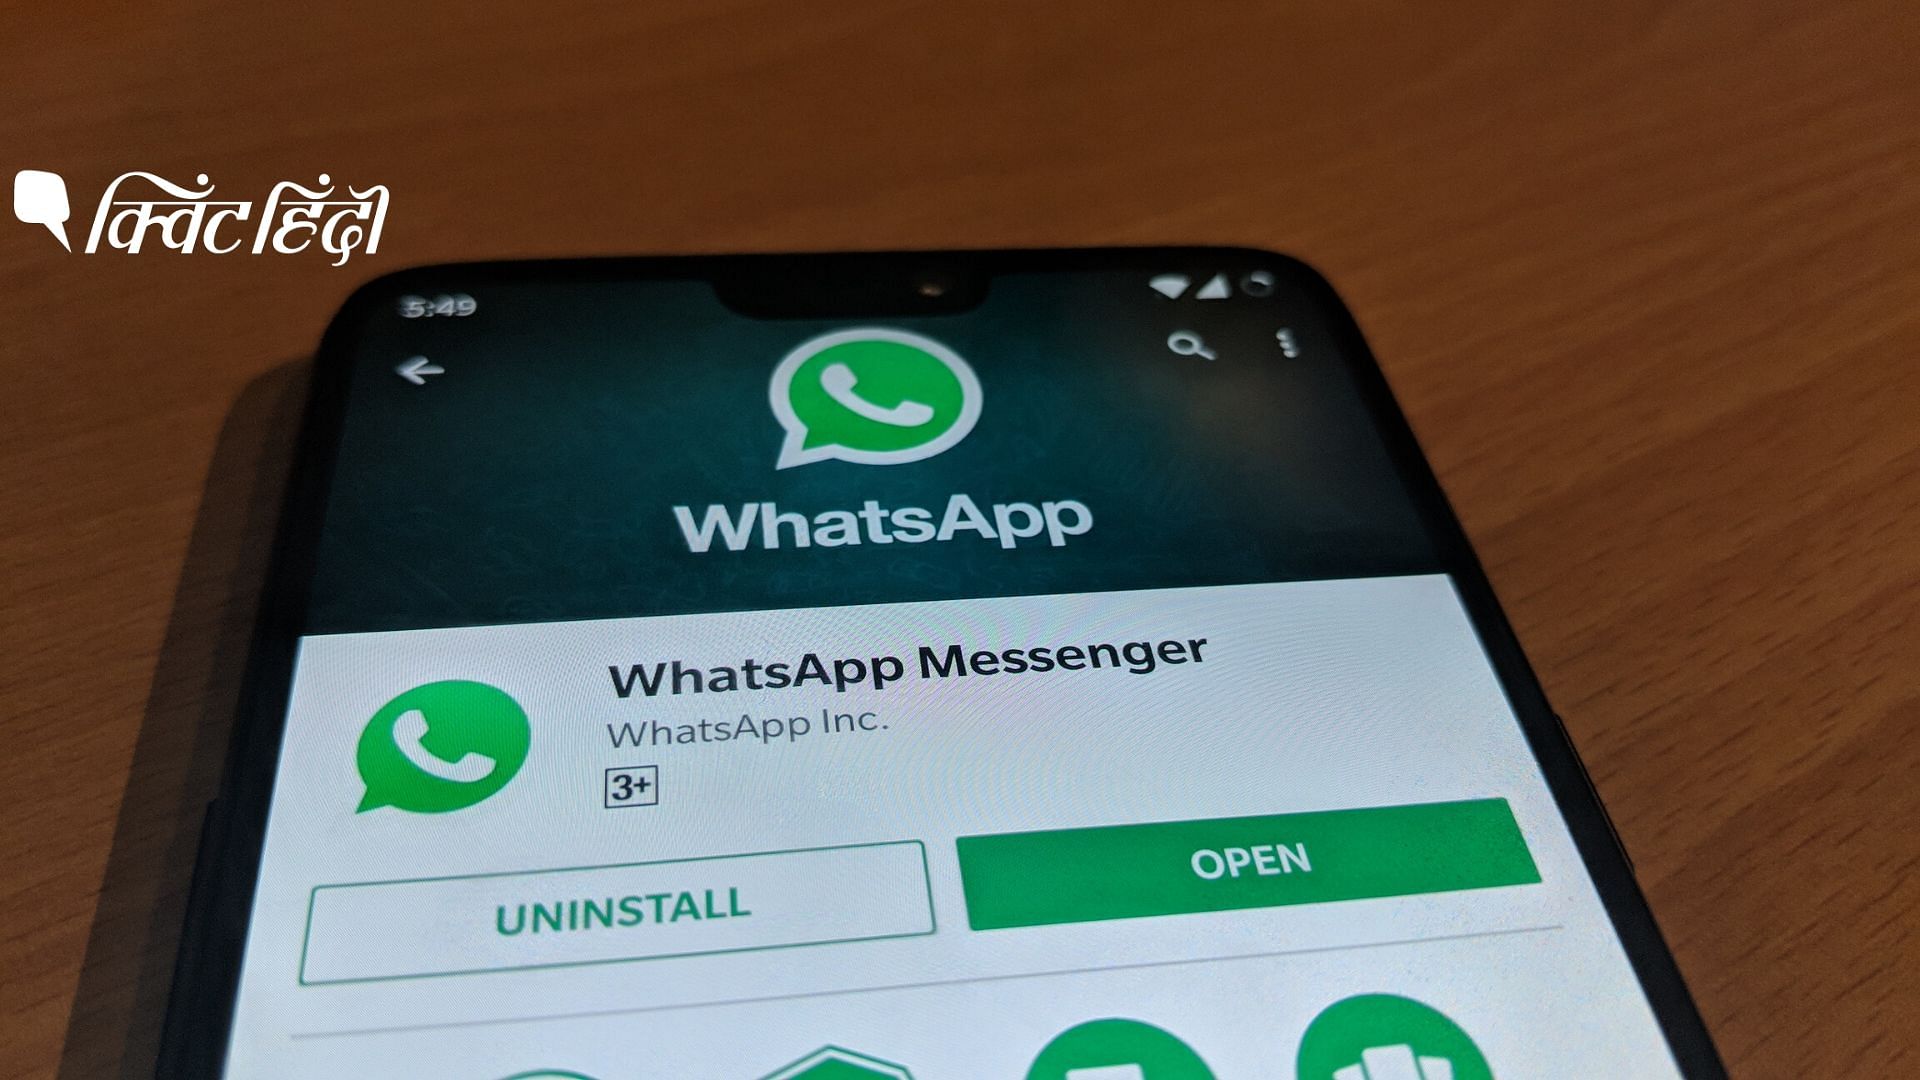 WhatsApp इस फीचर पर काम कर रहा है जो जल्द ही यूजर्स के लिए उपलब्ध होगा